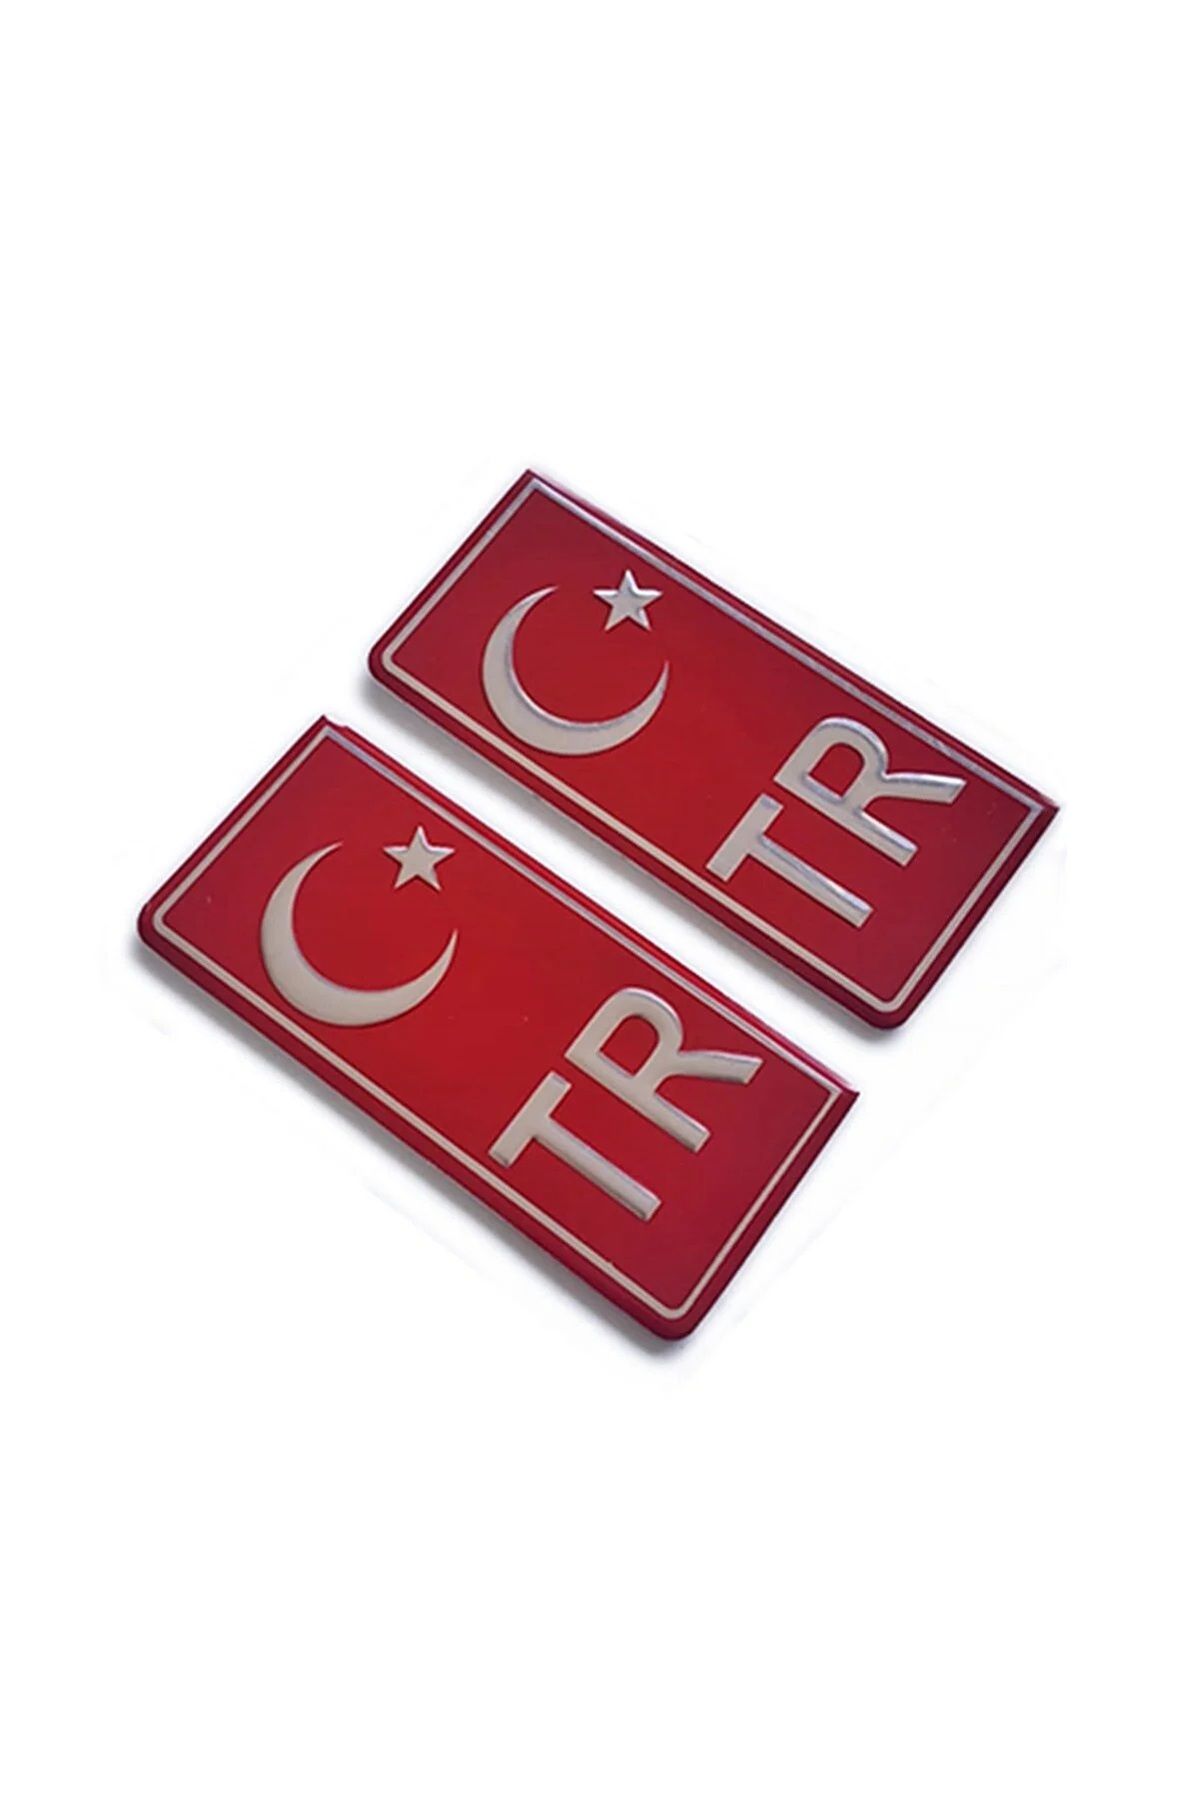 GARDENAUTO Tr Plaka Krom Sticker 2'li - Türkiye Plaka Krom Sticker - Türkiye Plakalık Krom